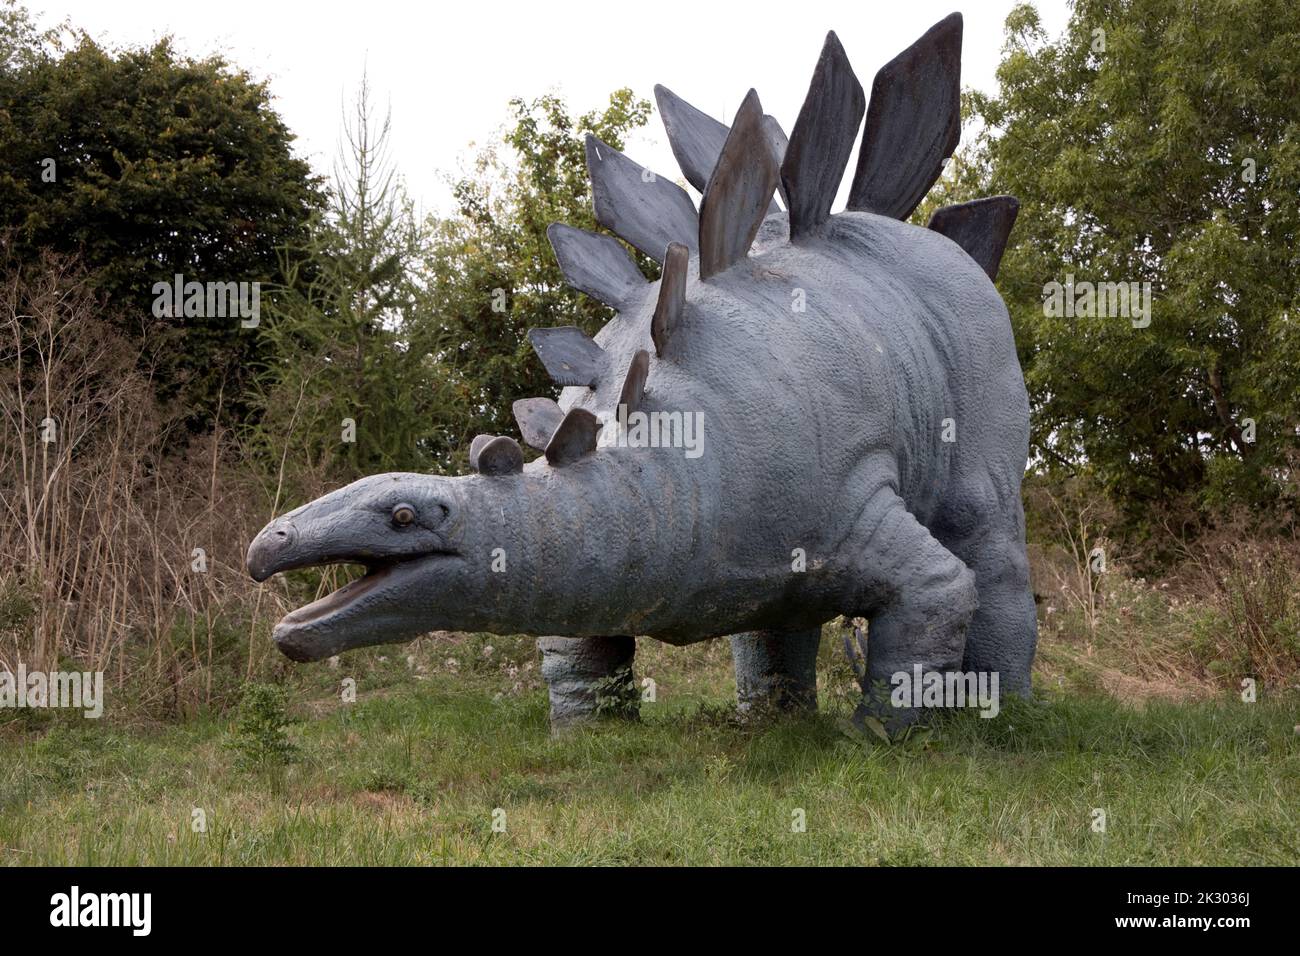 Lebensgroßes Modell von Stegosaurus ein pflanzenfressender, vierbeiniger, gepanzerter Dinosaurier aus dem späten Jurassicd, All Things Wild, Honeybourne, Großbritannien Stockfoto